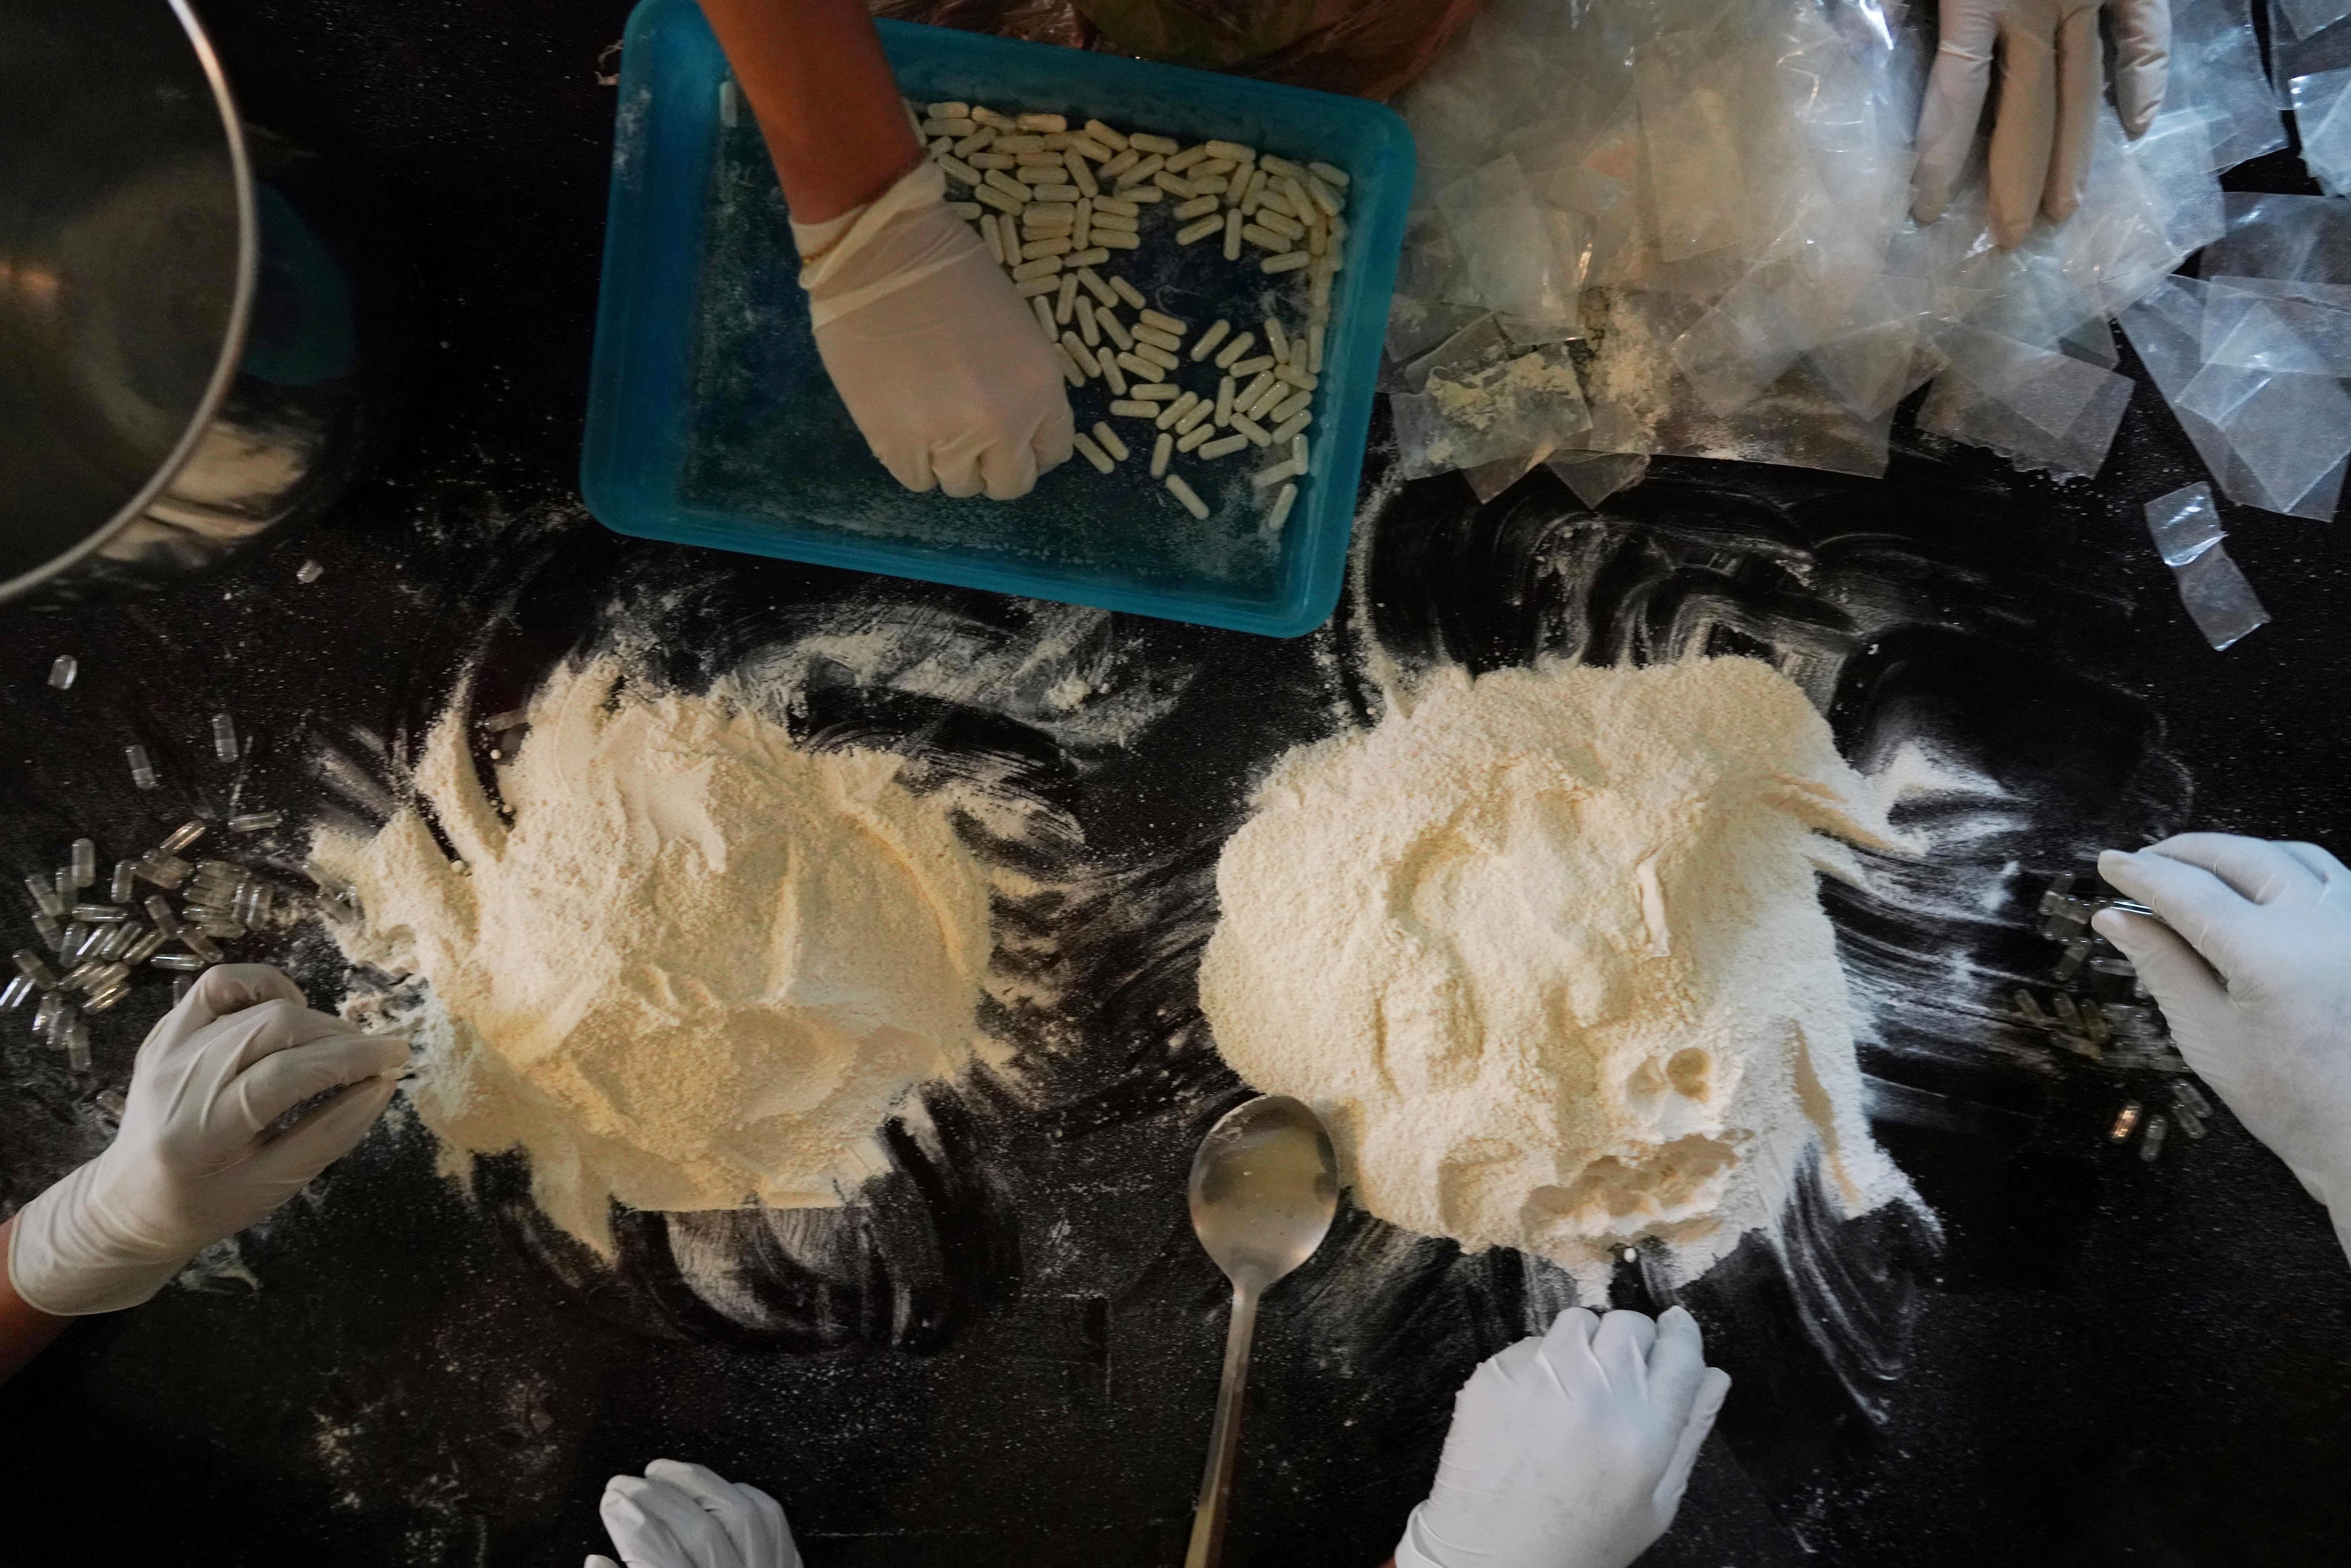 Miembros del cártel de Sinaloa preparan cápsulas con metanfetamina en un piso franco de Culiacán, México (REUTERS/Alexandre Meneghini)